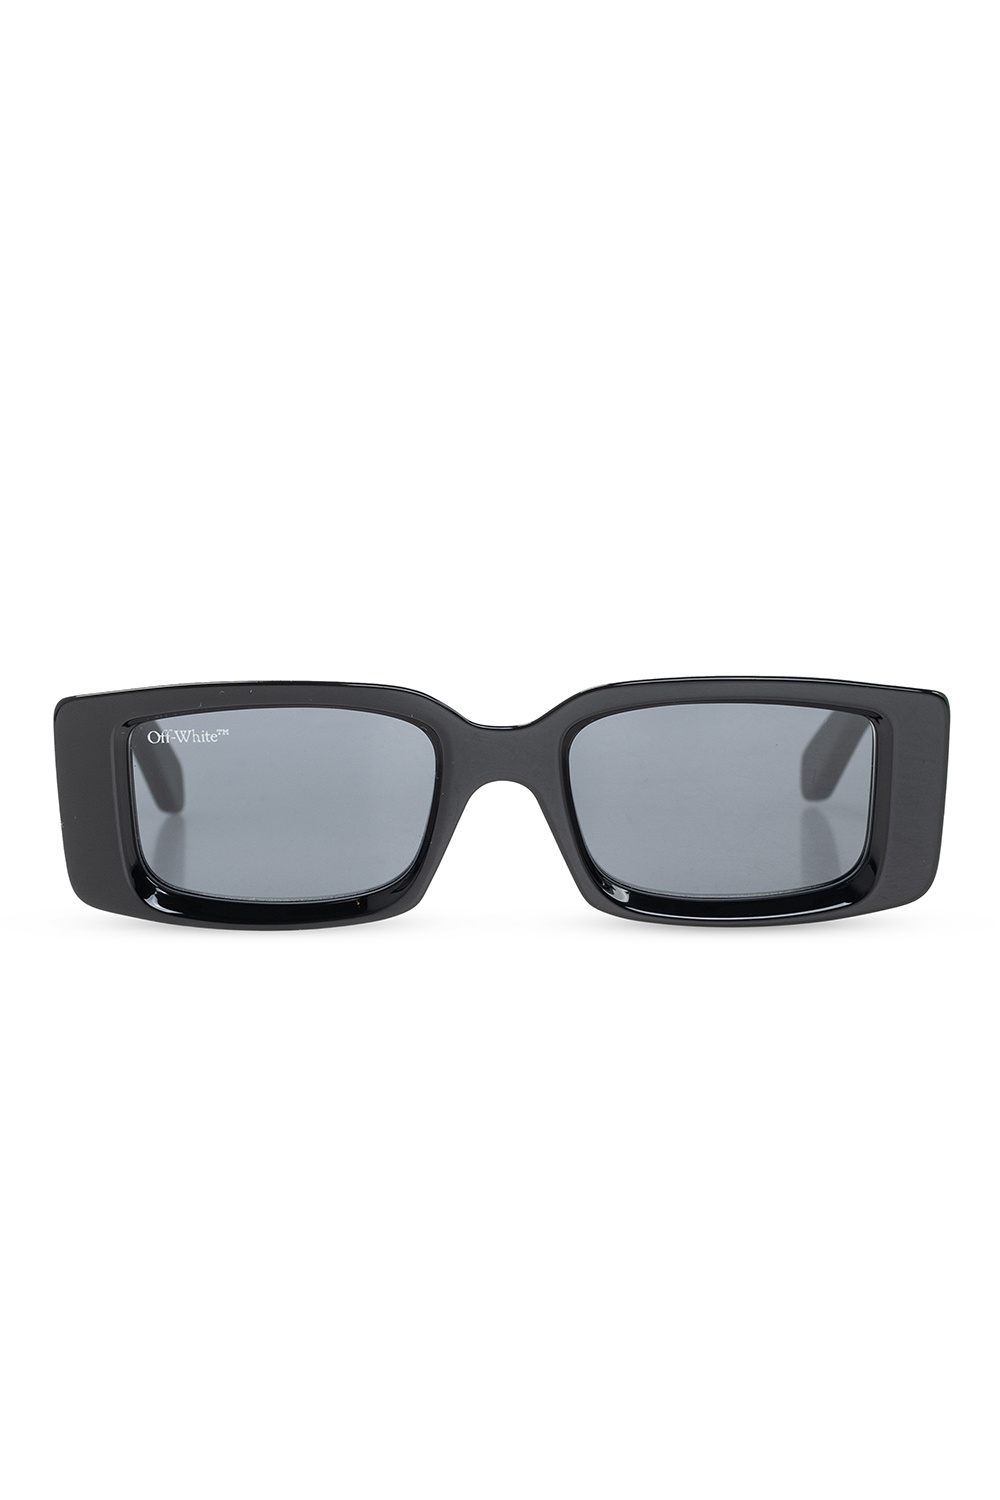 Off-White Va4010 Havana Sunglasses